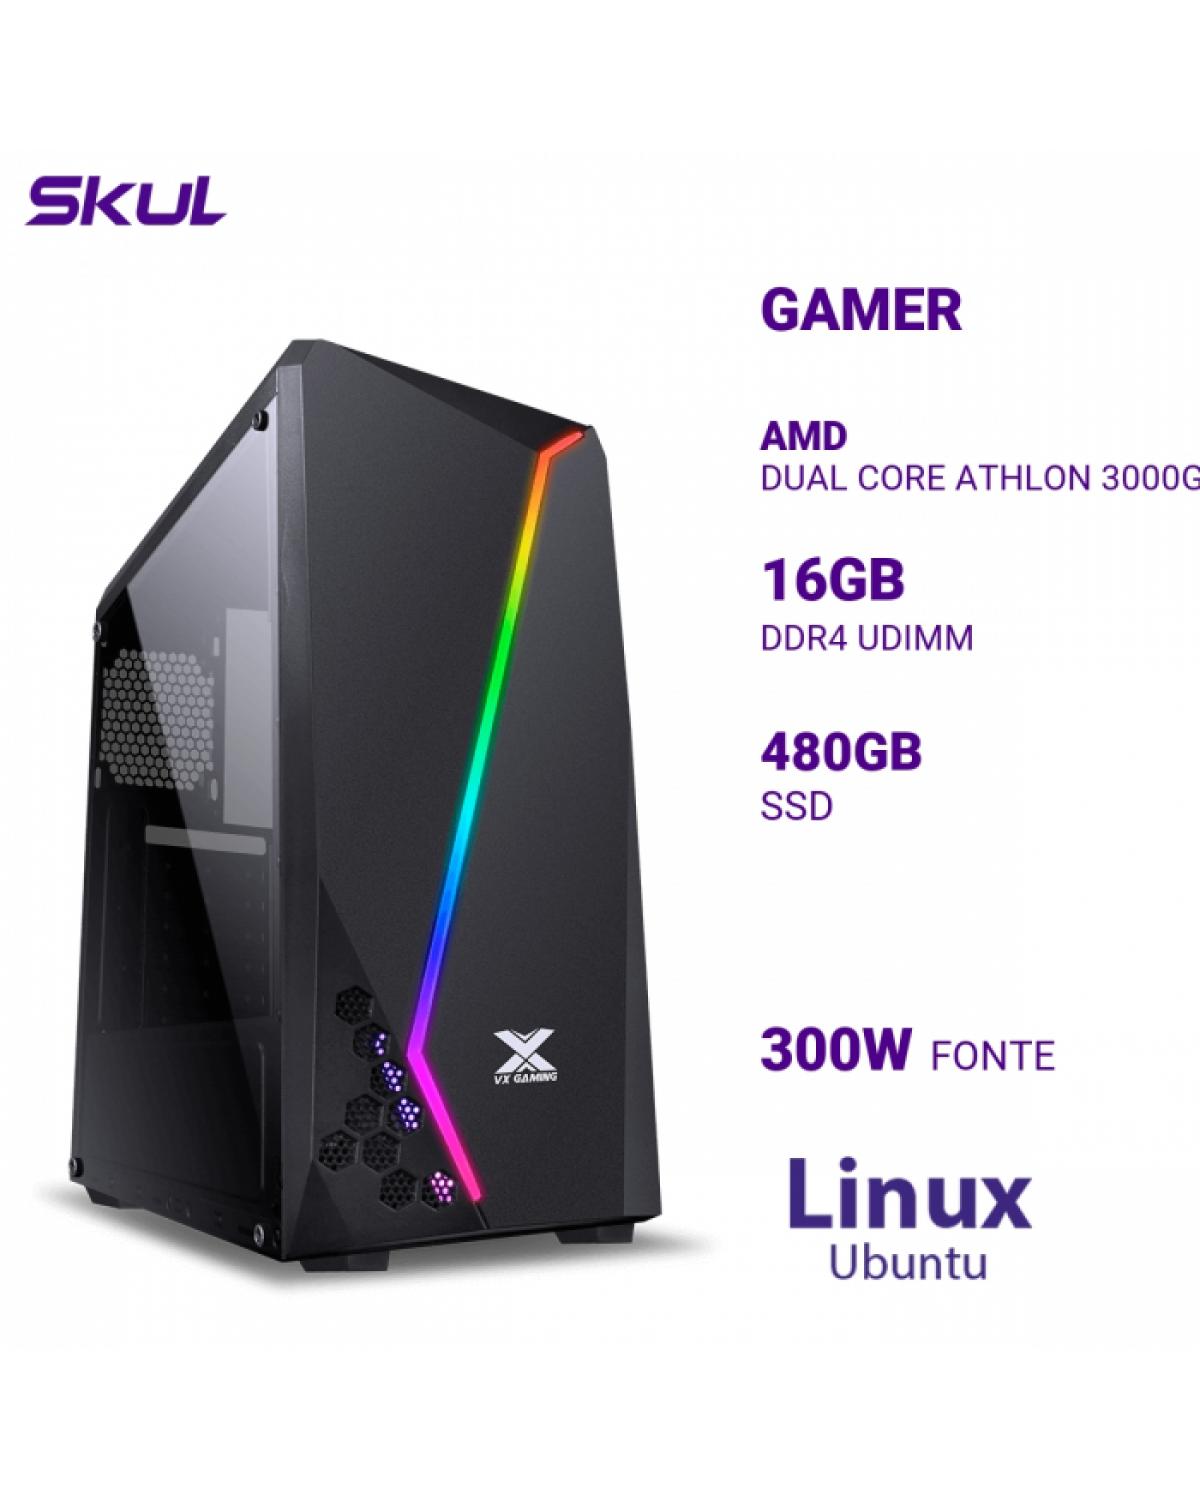 COMPUTADOR GAMER 1000 DUAL CORE ATHLON 3000G 3.50GHZ MEM 16GB DDR4 SSD 480GB FONTE 300W LINUX